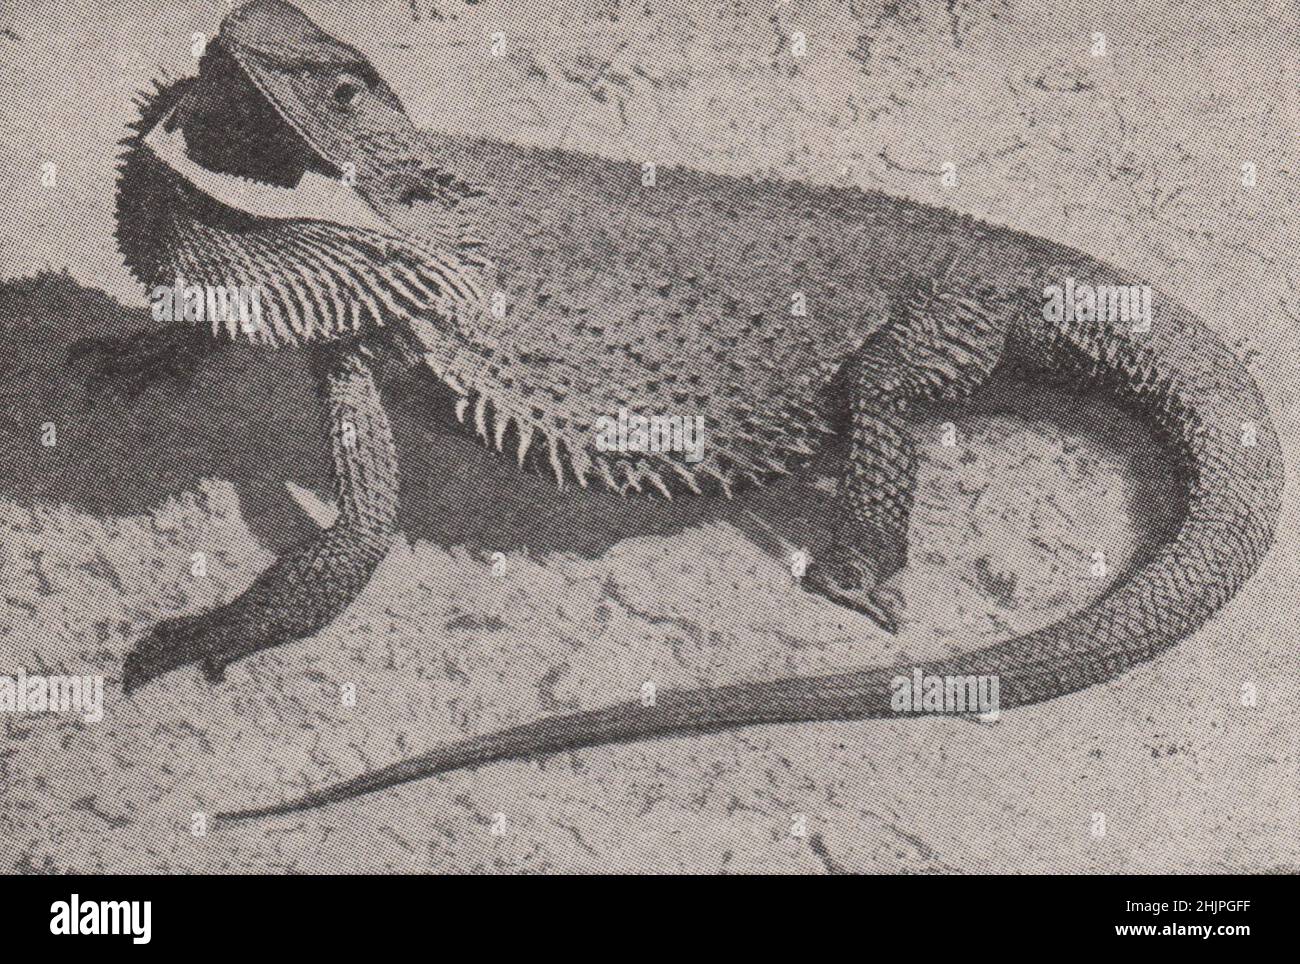 Freak reptilien des Antipodes. Australie (1923) Banque D'Images